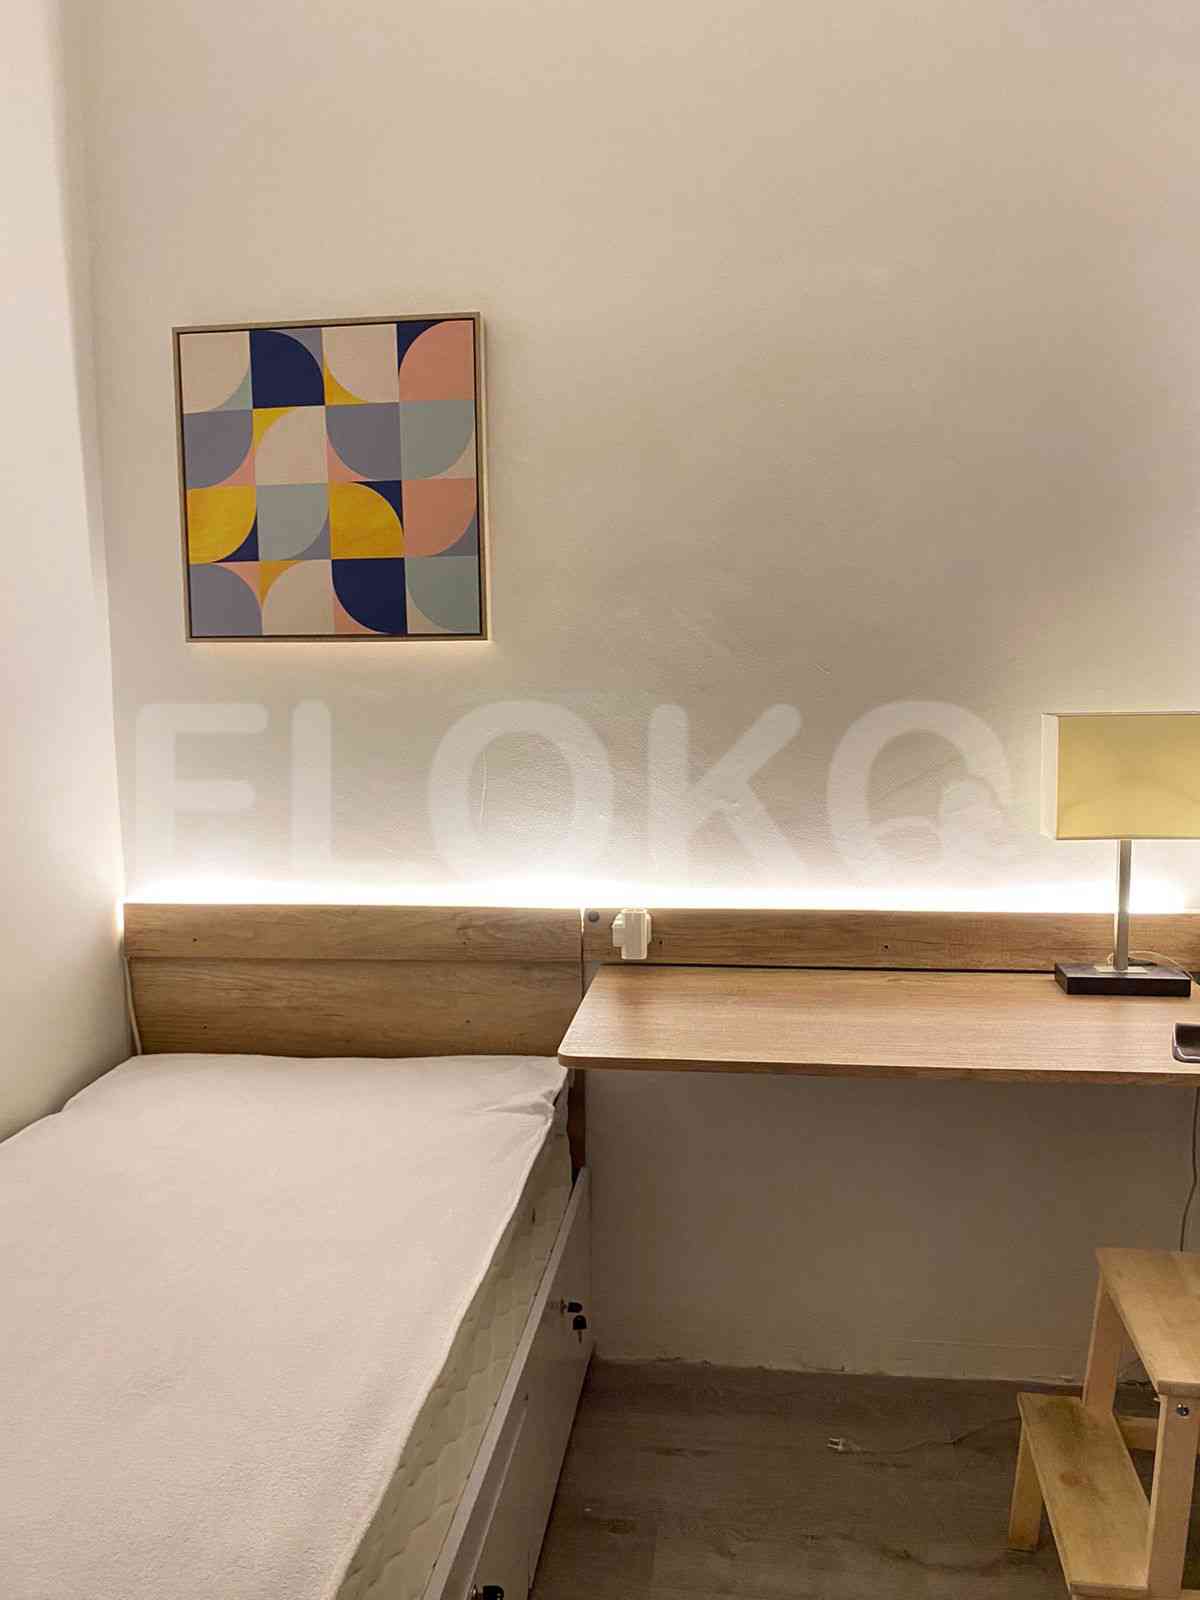 2 Bedroom on 14th Floor for Rent in Sudirman Suites Jakarta - fsu321 5